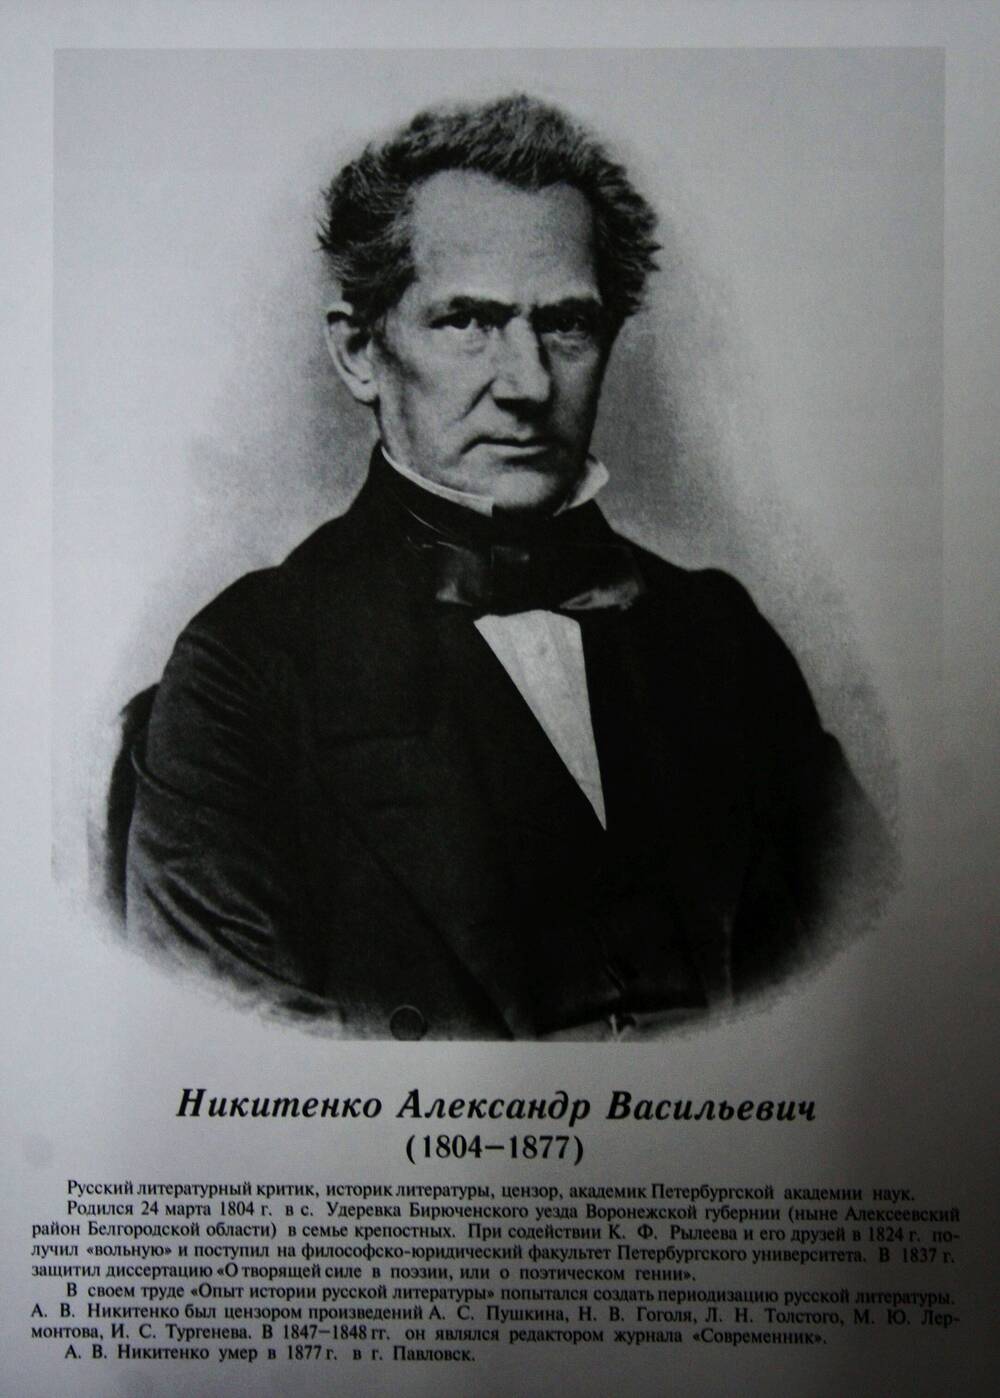 Плакат (фотопортрет) из комплекта Галерея славных имен Белгородчины. Никитенко Александр Васильевич (1804-1877).